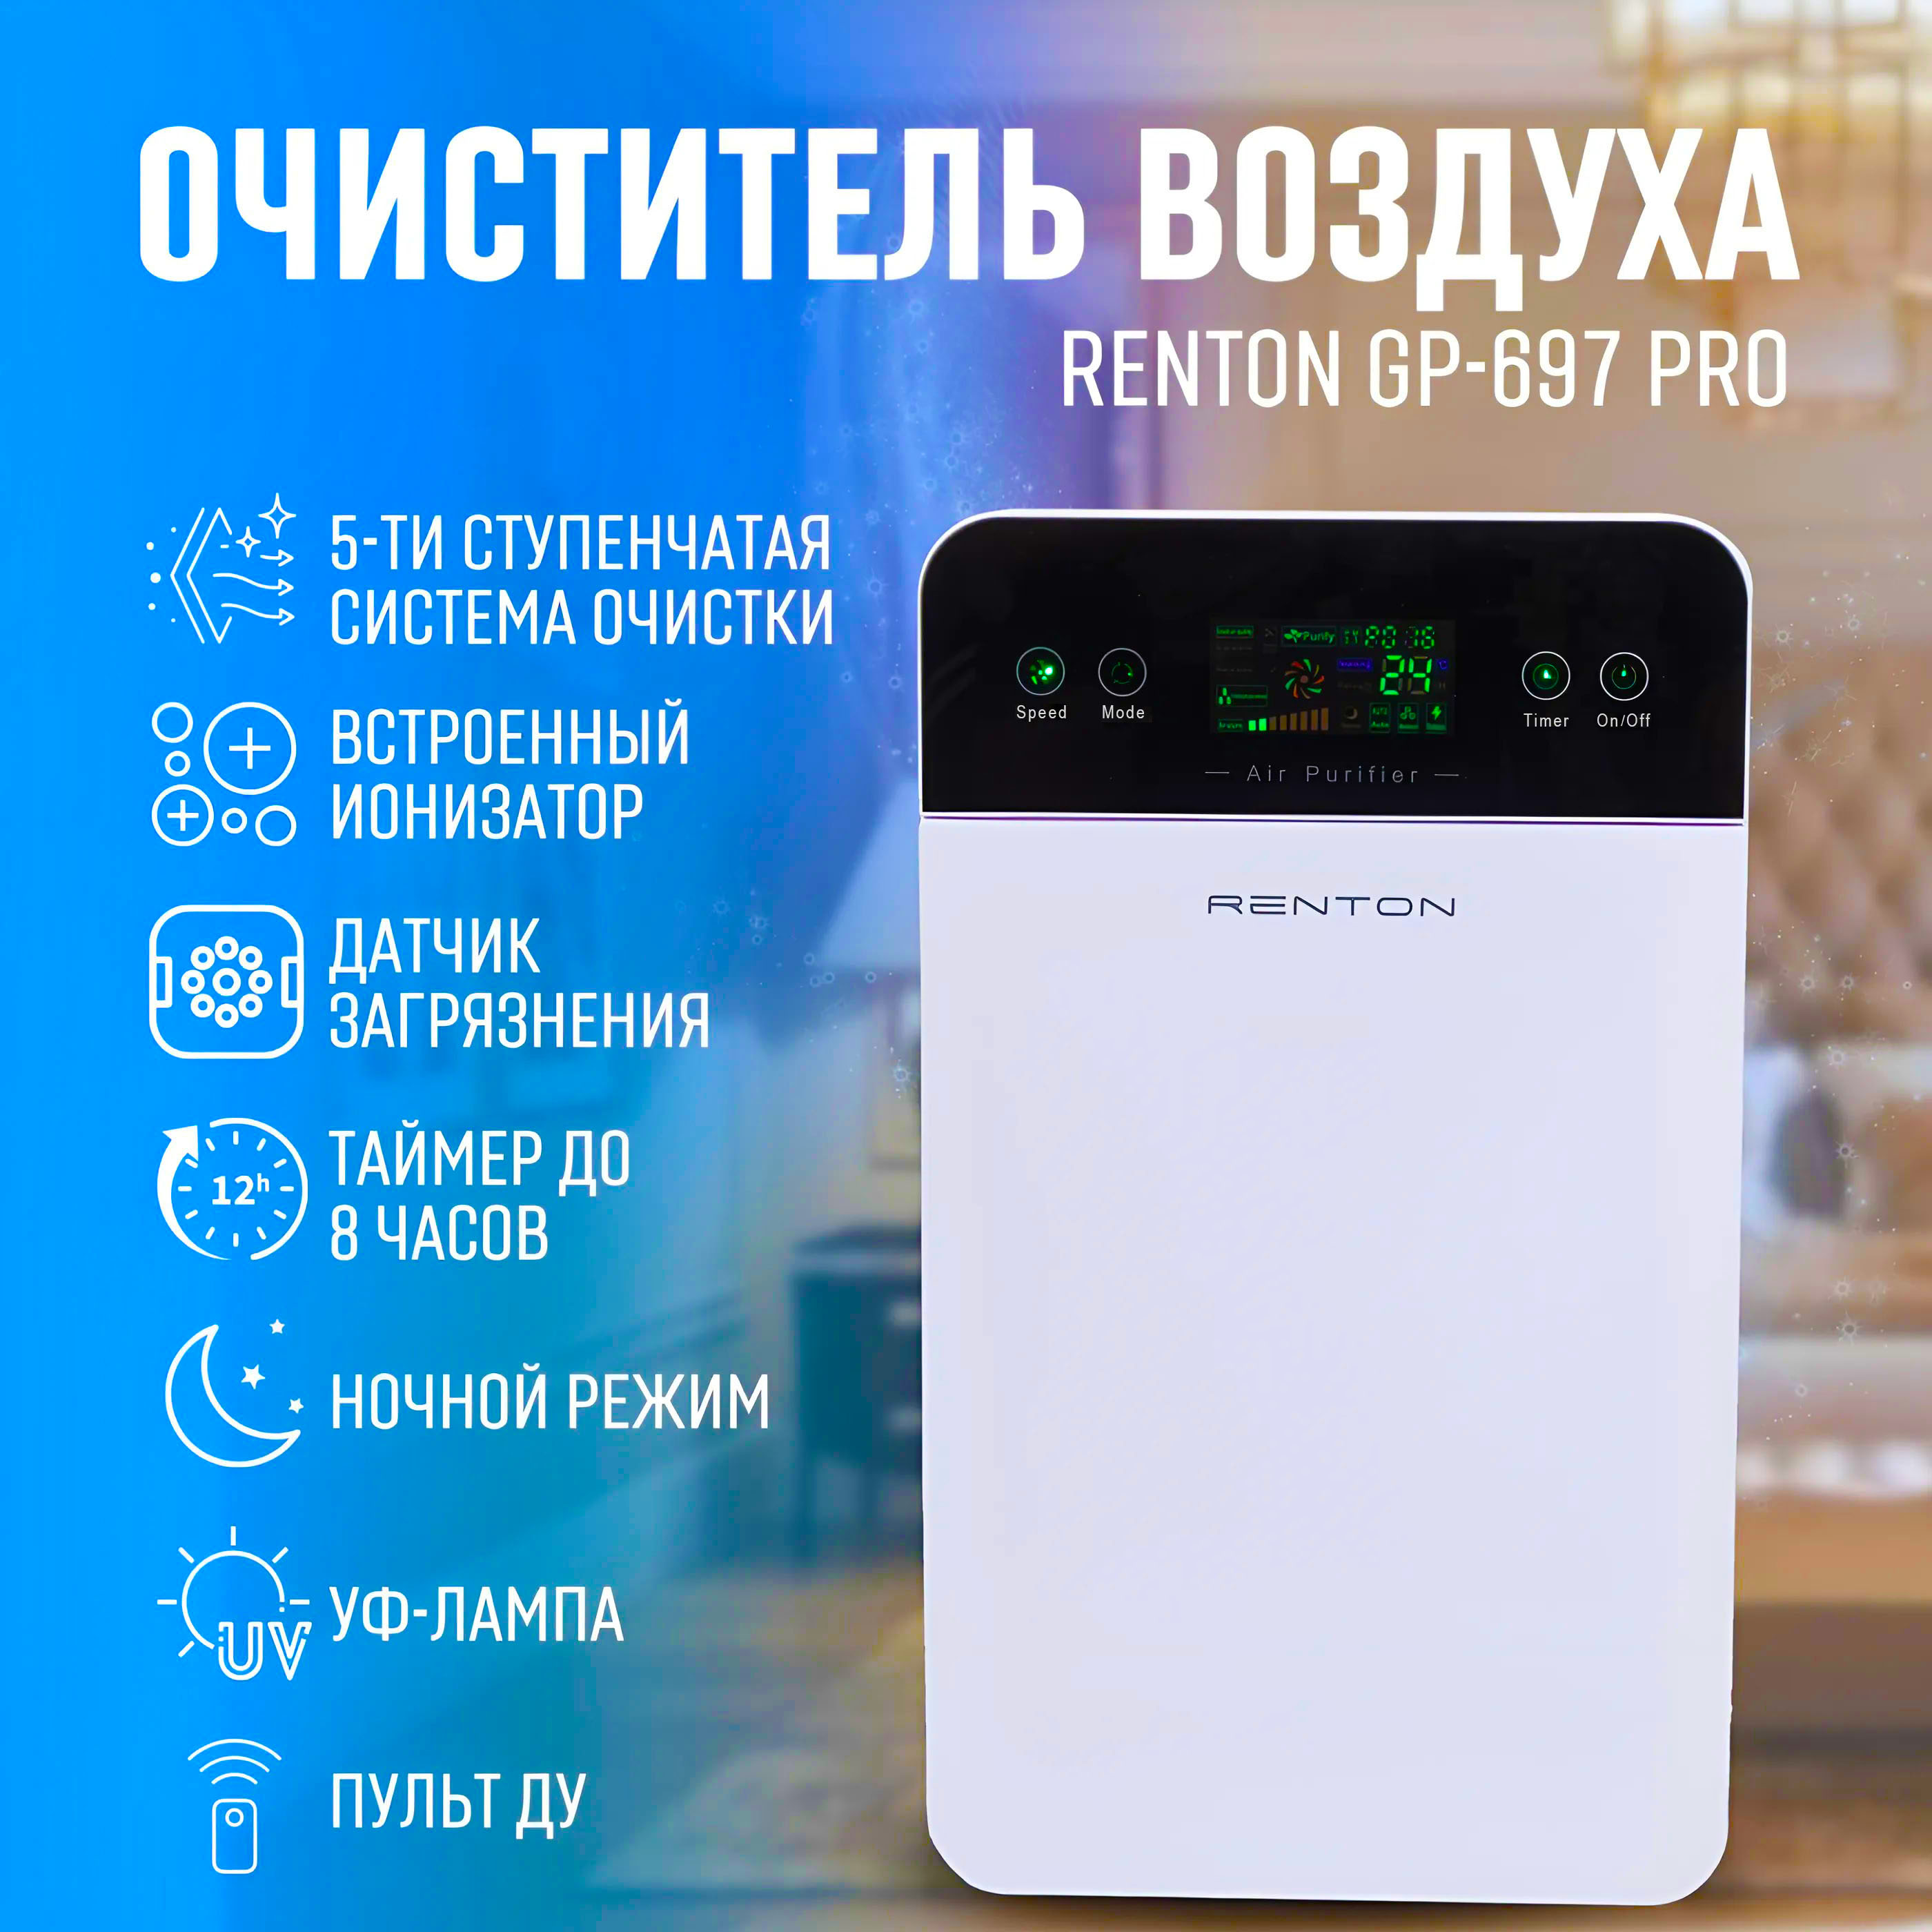 Очиститель воздуха для квартиры с ионизацией Renton GP-697 Pro очиститель воздуха fanline ve 200 белый